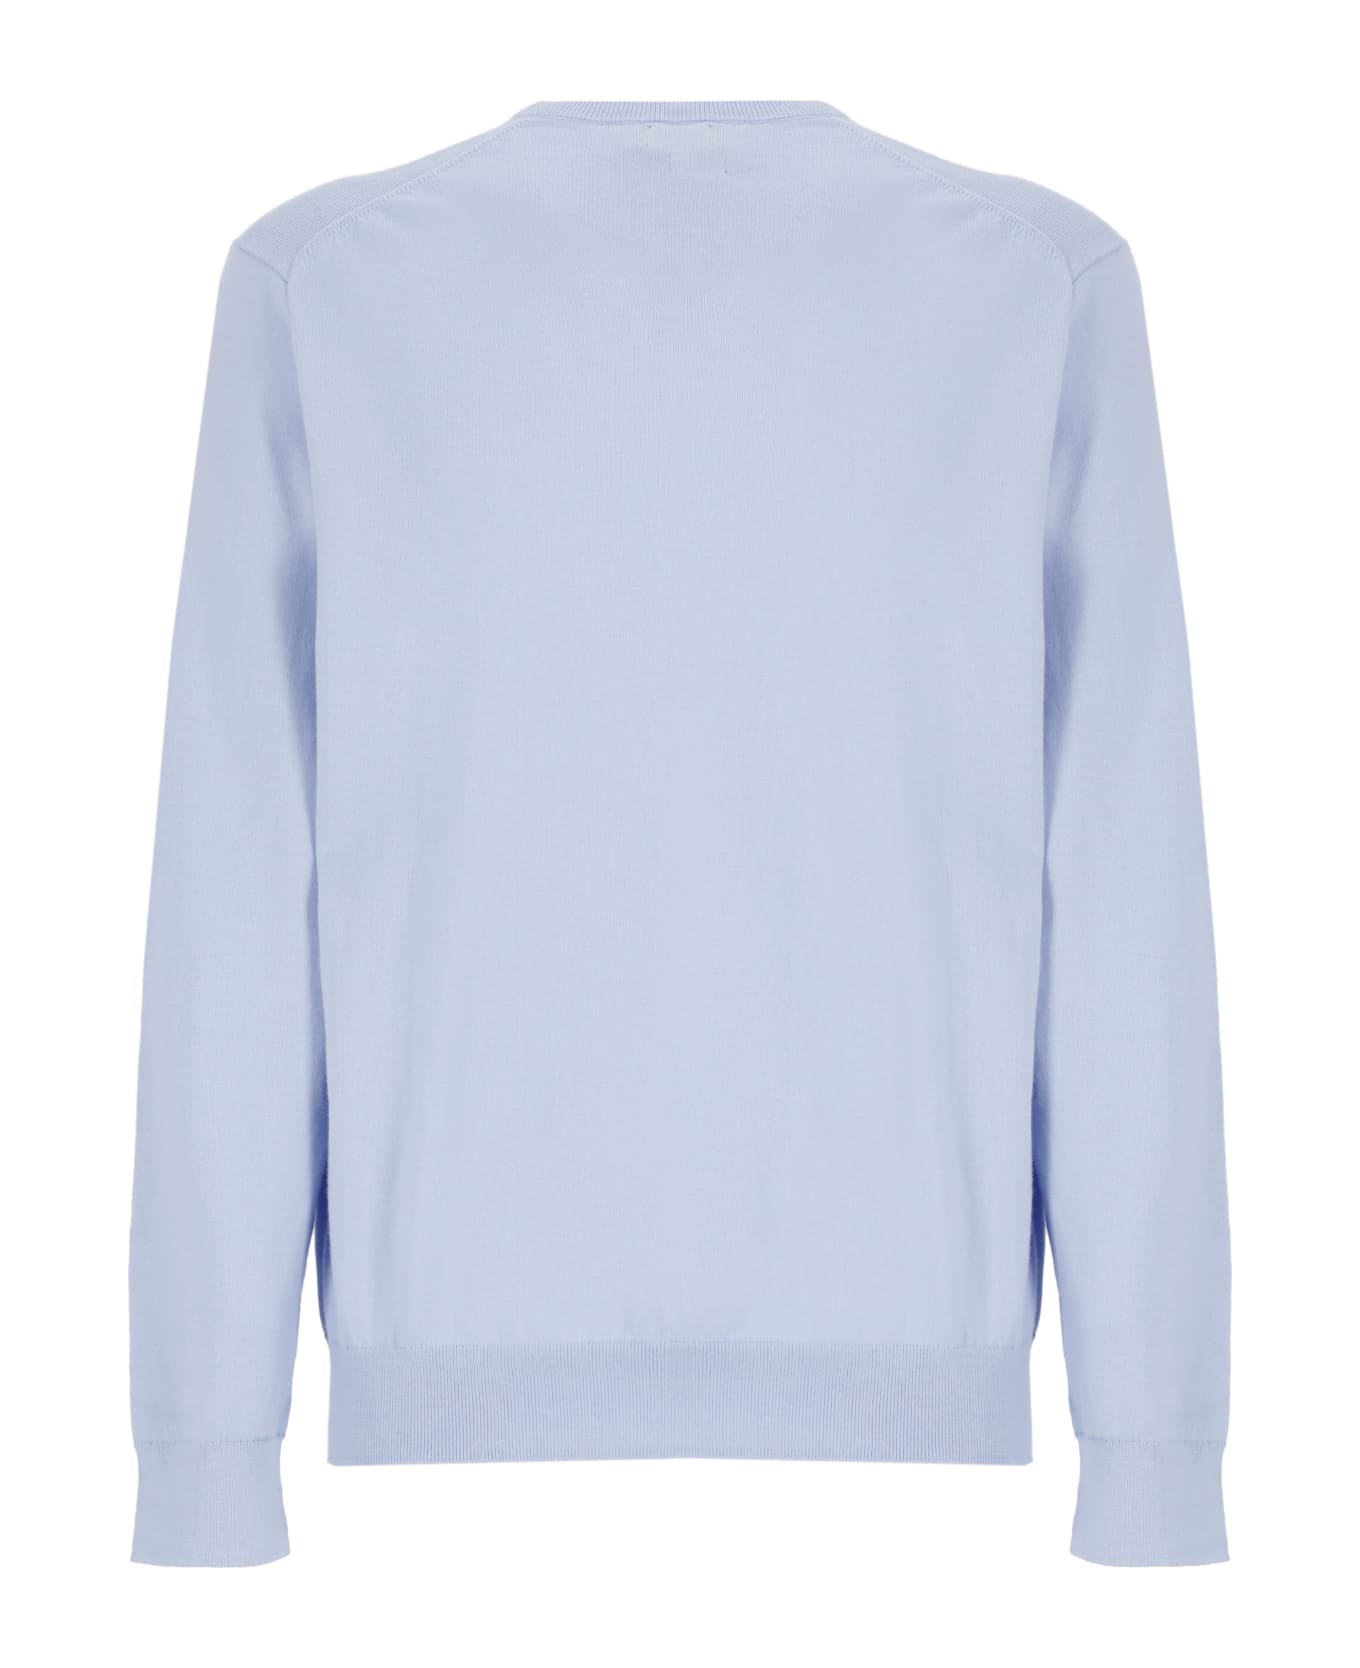 Ralph Lauren Short Sleeve Sweater Sweater - Light Blue